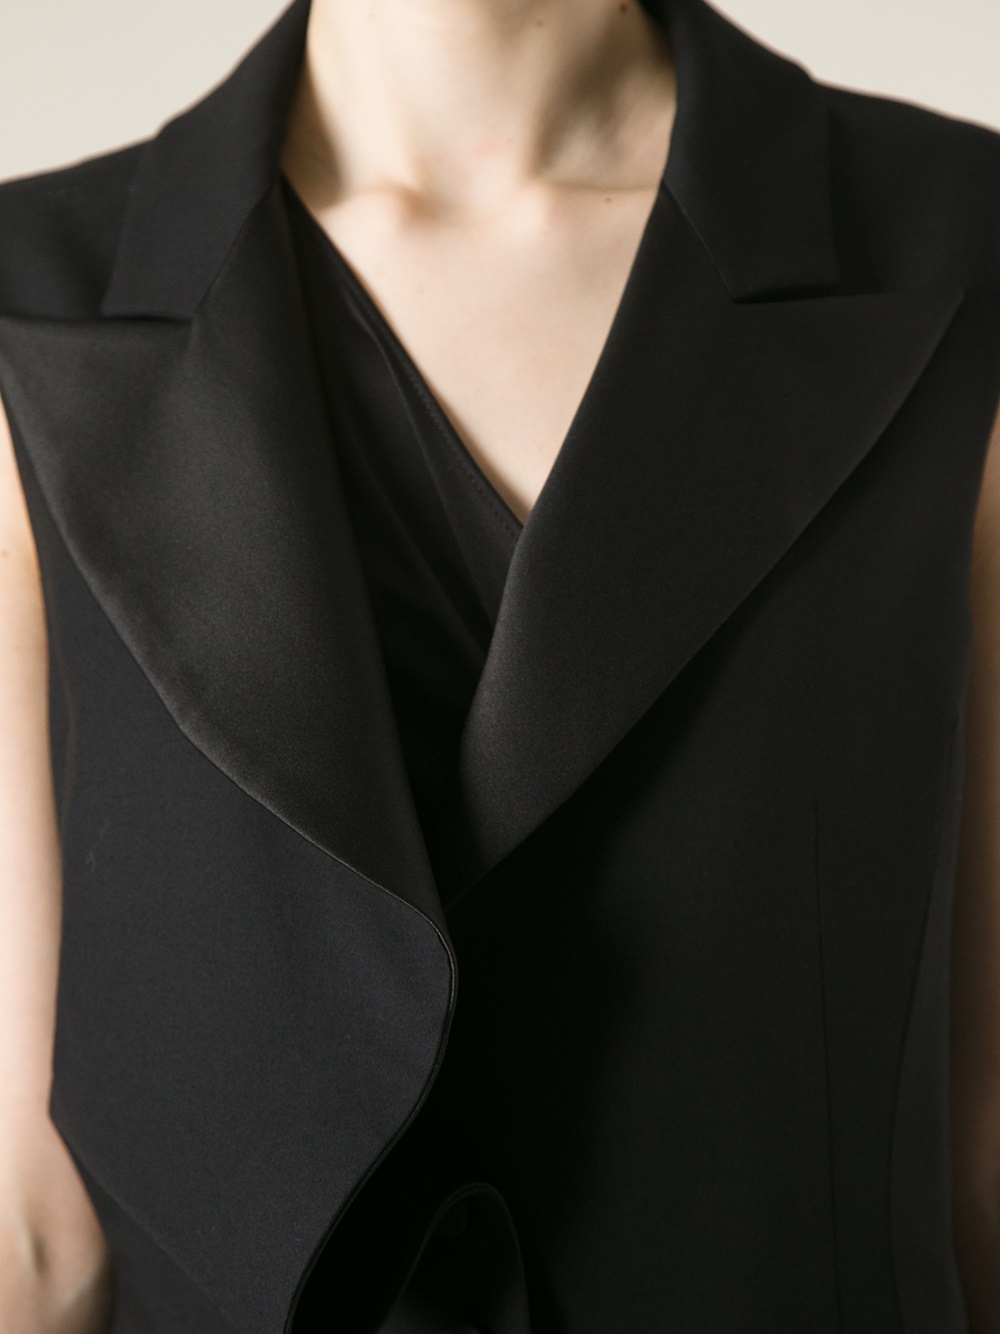 McQ Ruffle Detail Dress in Black - Lyst